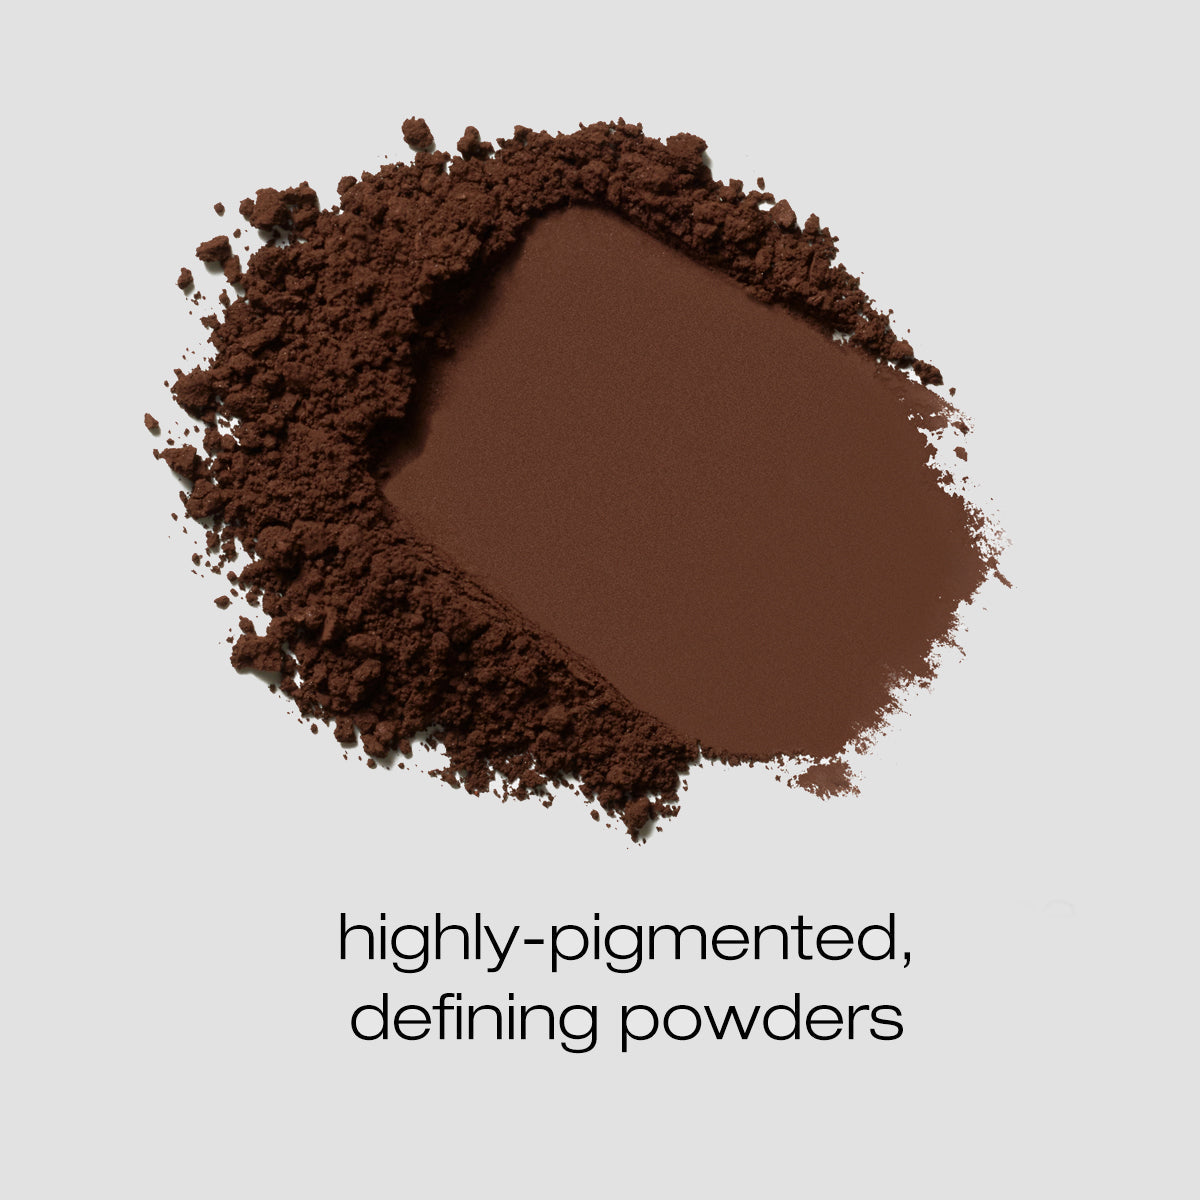 Hot fudge powder spread described as a highly pigmented defining powder